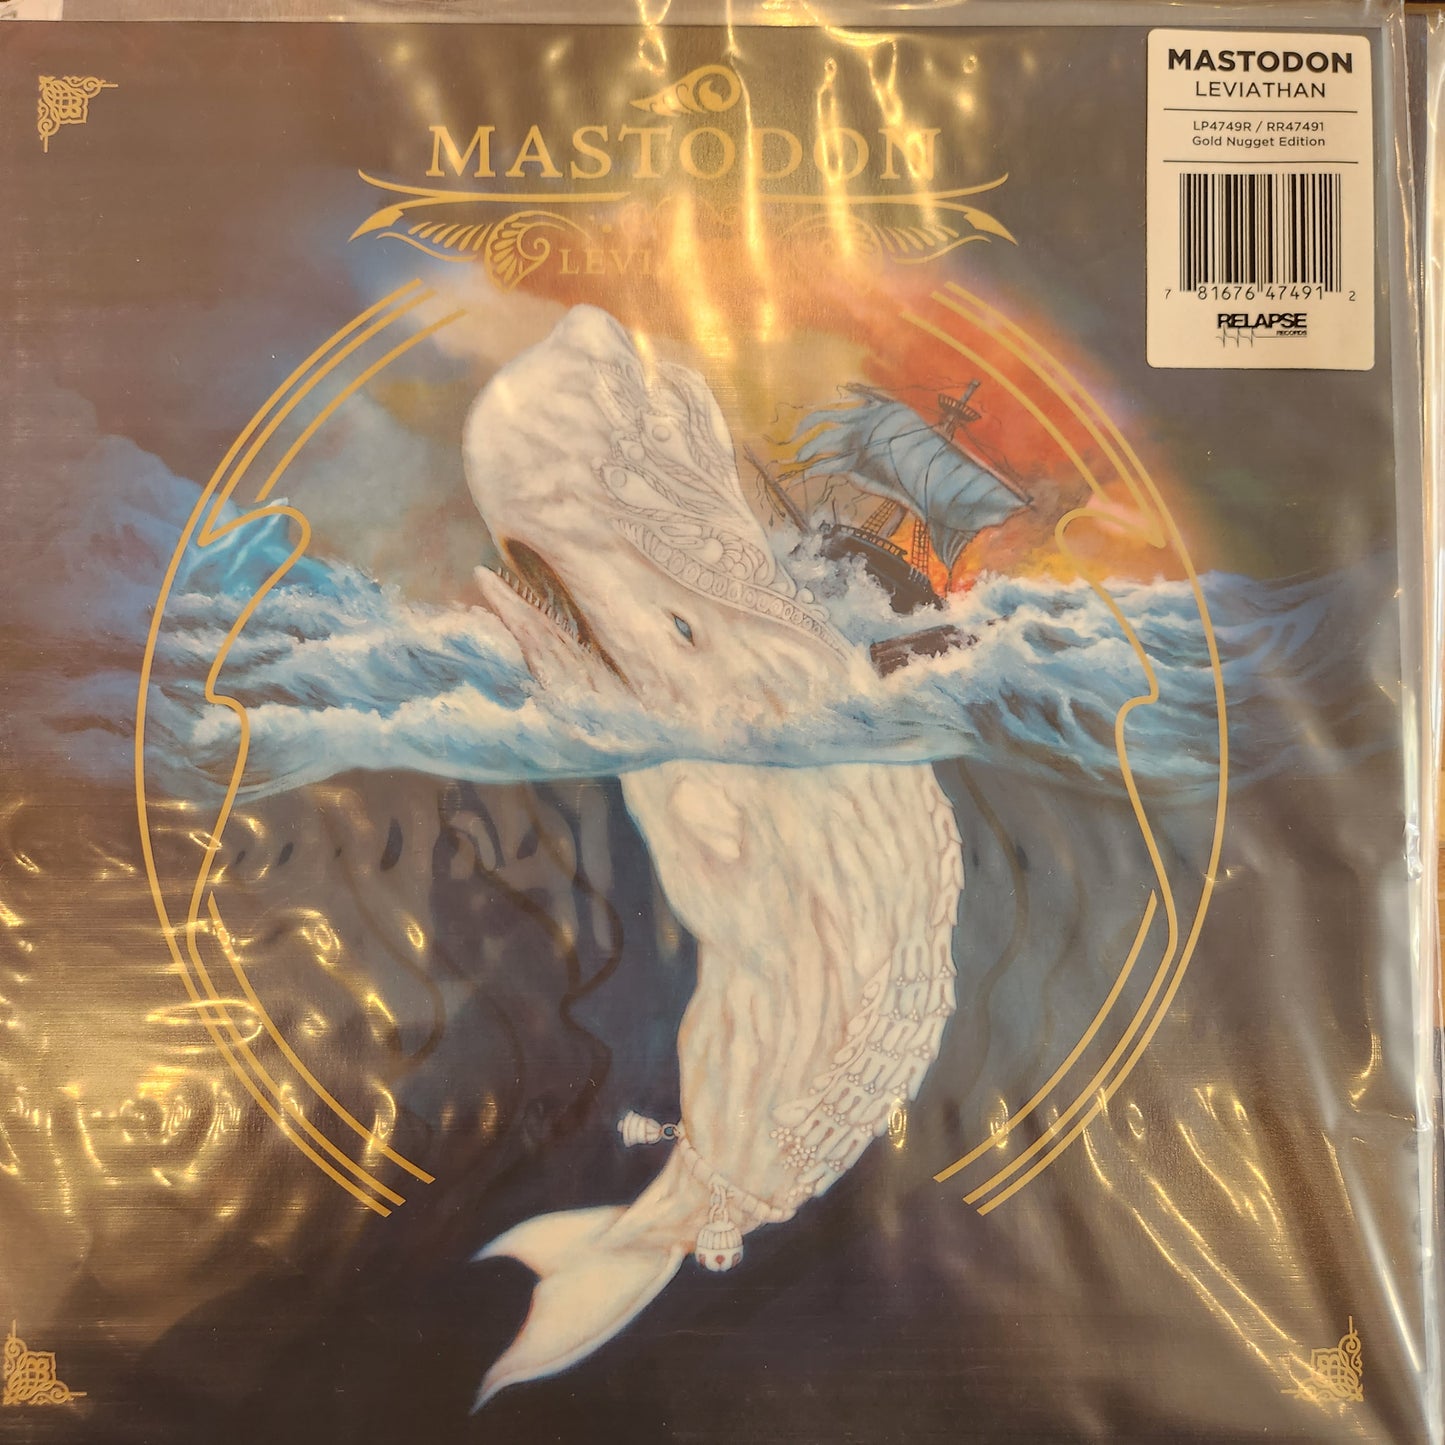 Mastodon - Leviathan - Blue Vinyl LP